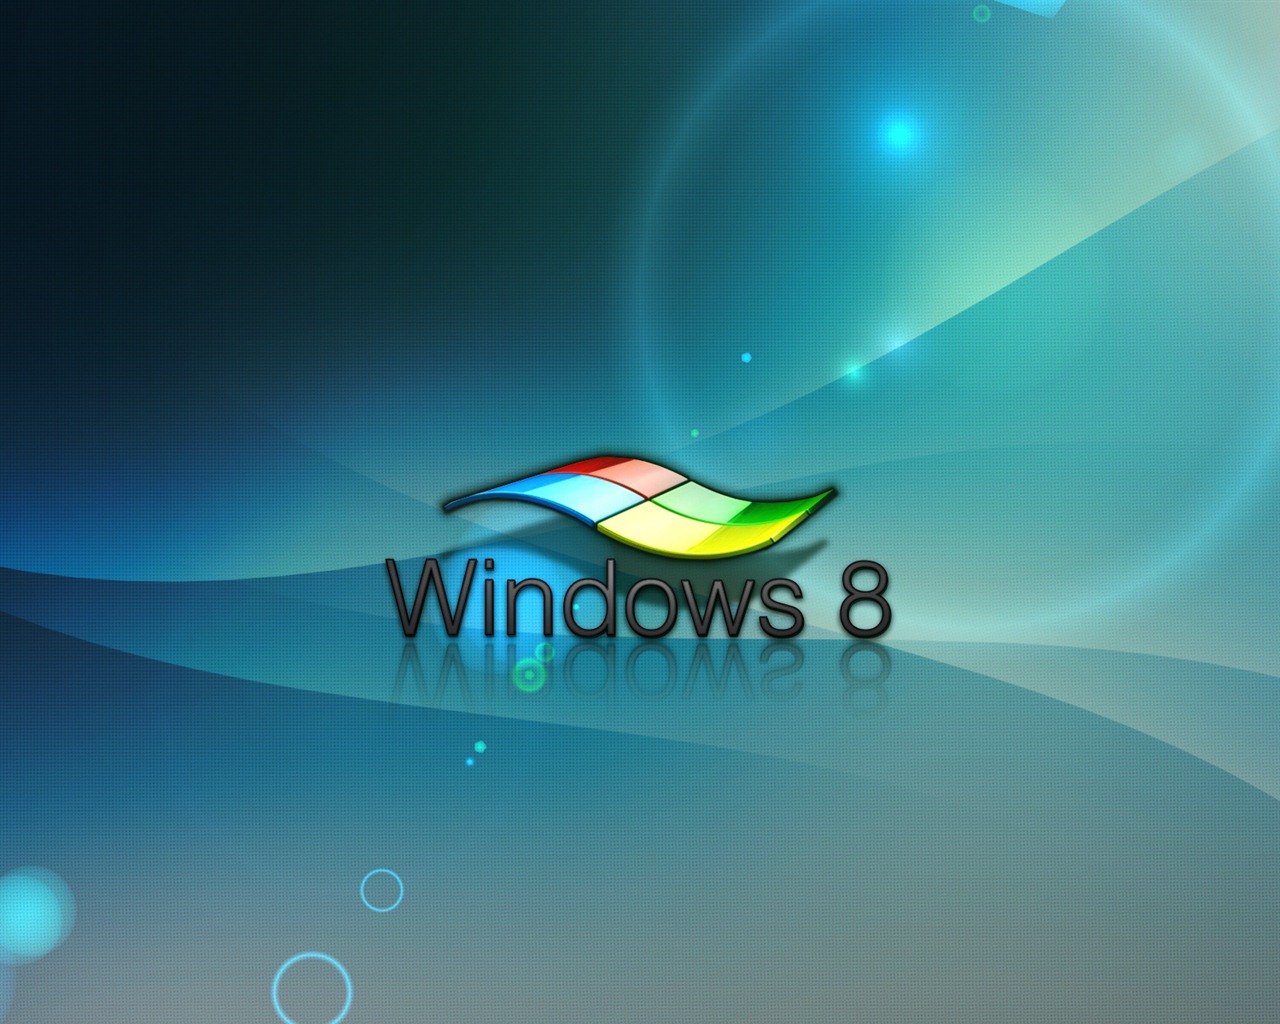 Windows 8 theme wallpaper (1) #16 - 1280x1024